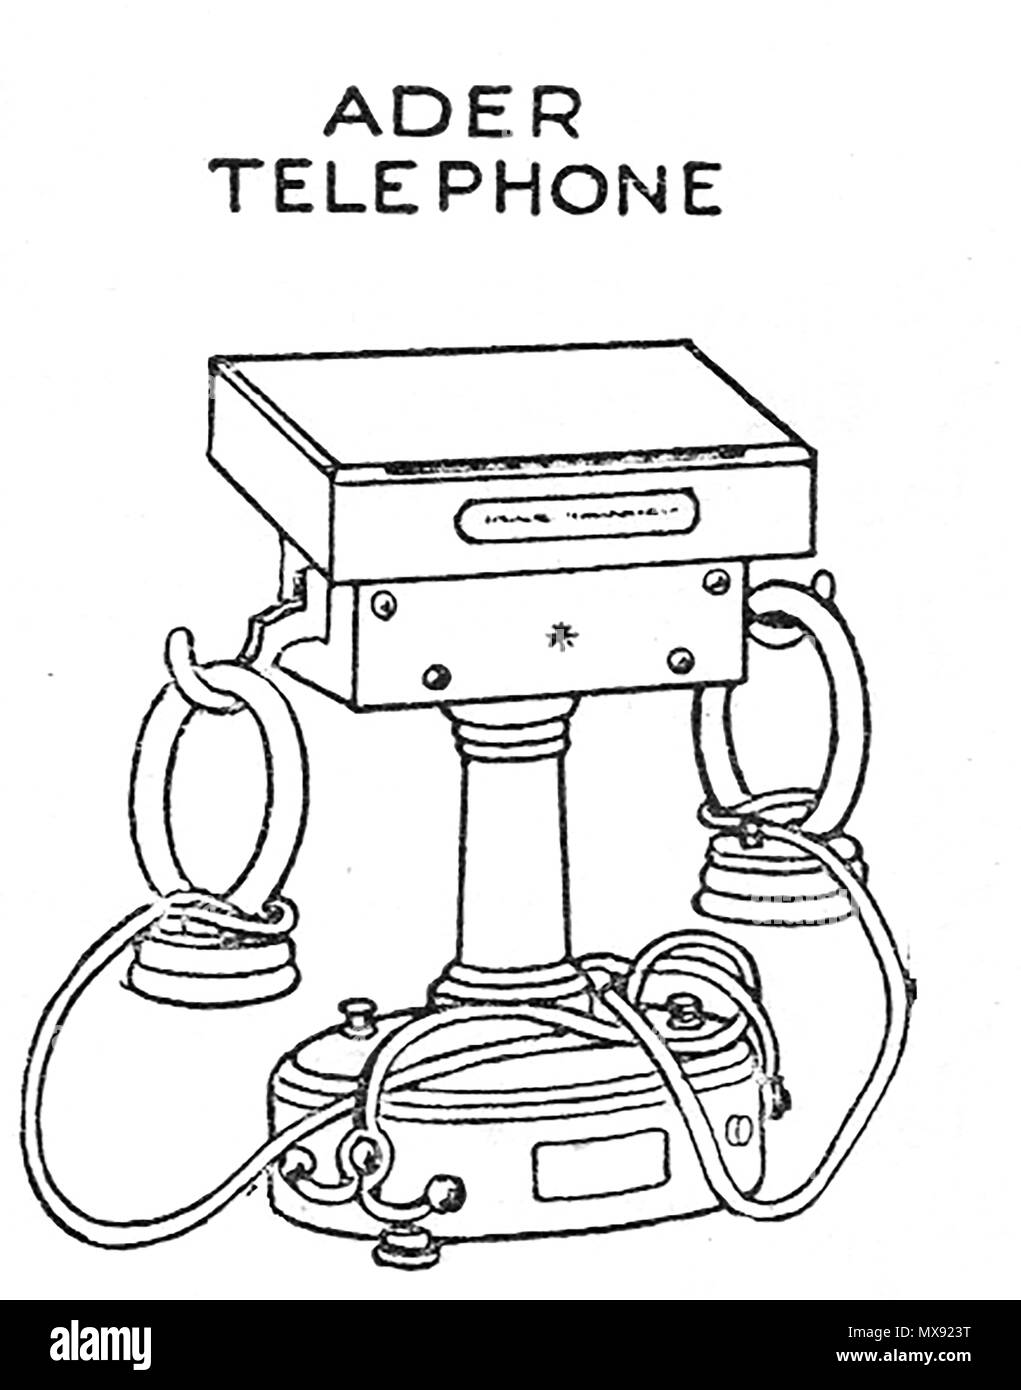 Primi apparecchi telefonici - Un 1930 Illustrazione di un Ader apparecchio telefonico dispositivo Foto Stock